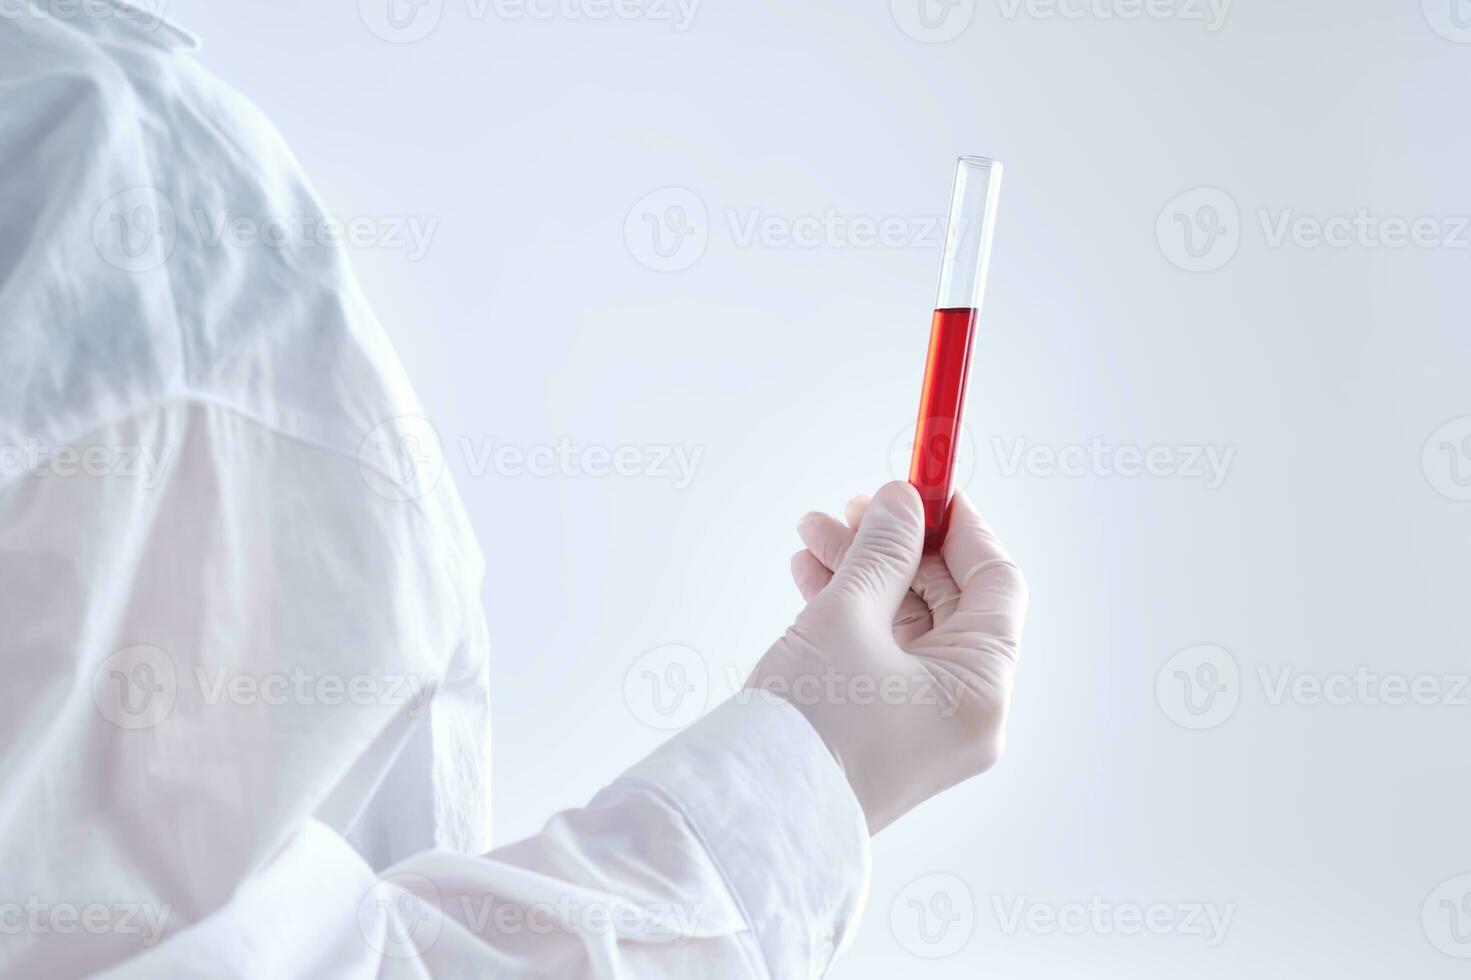 Prüfung Tube mit Blut im das Hand. foto